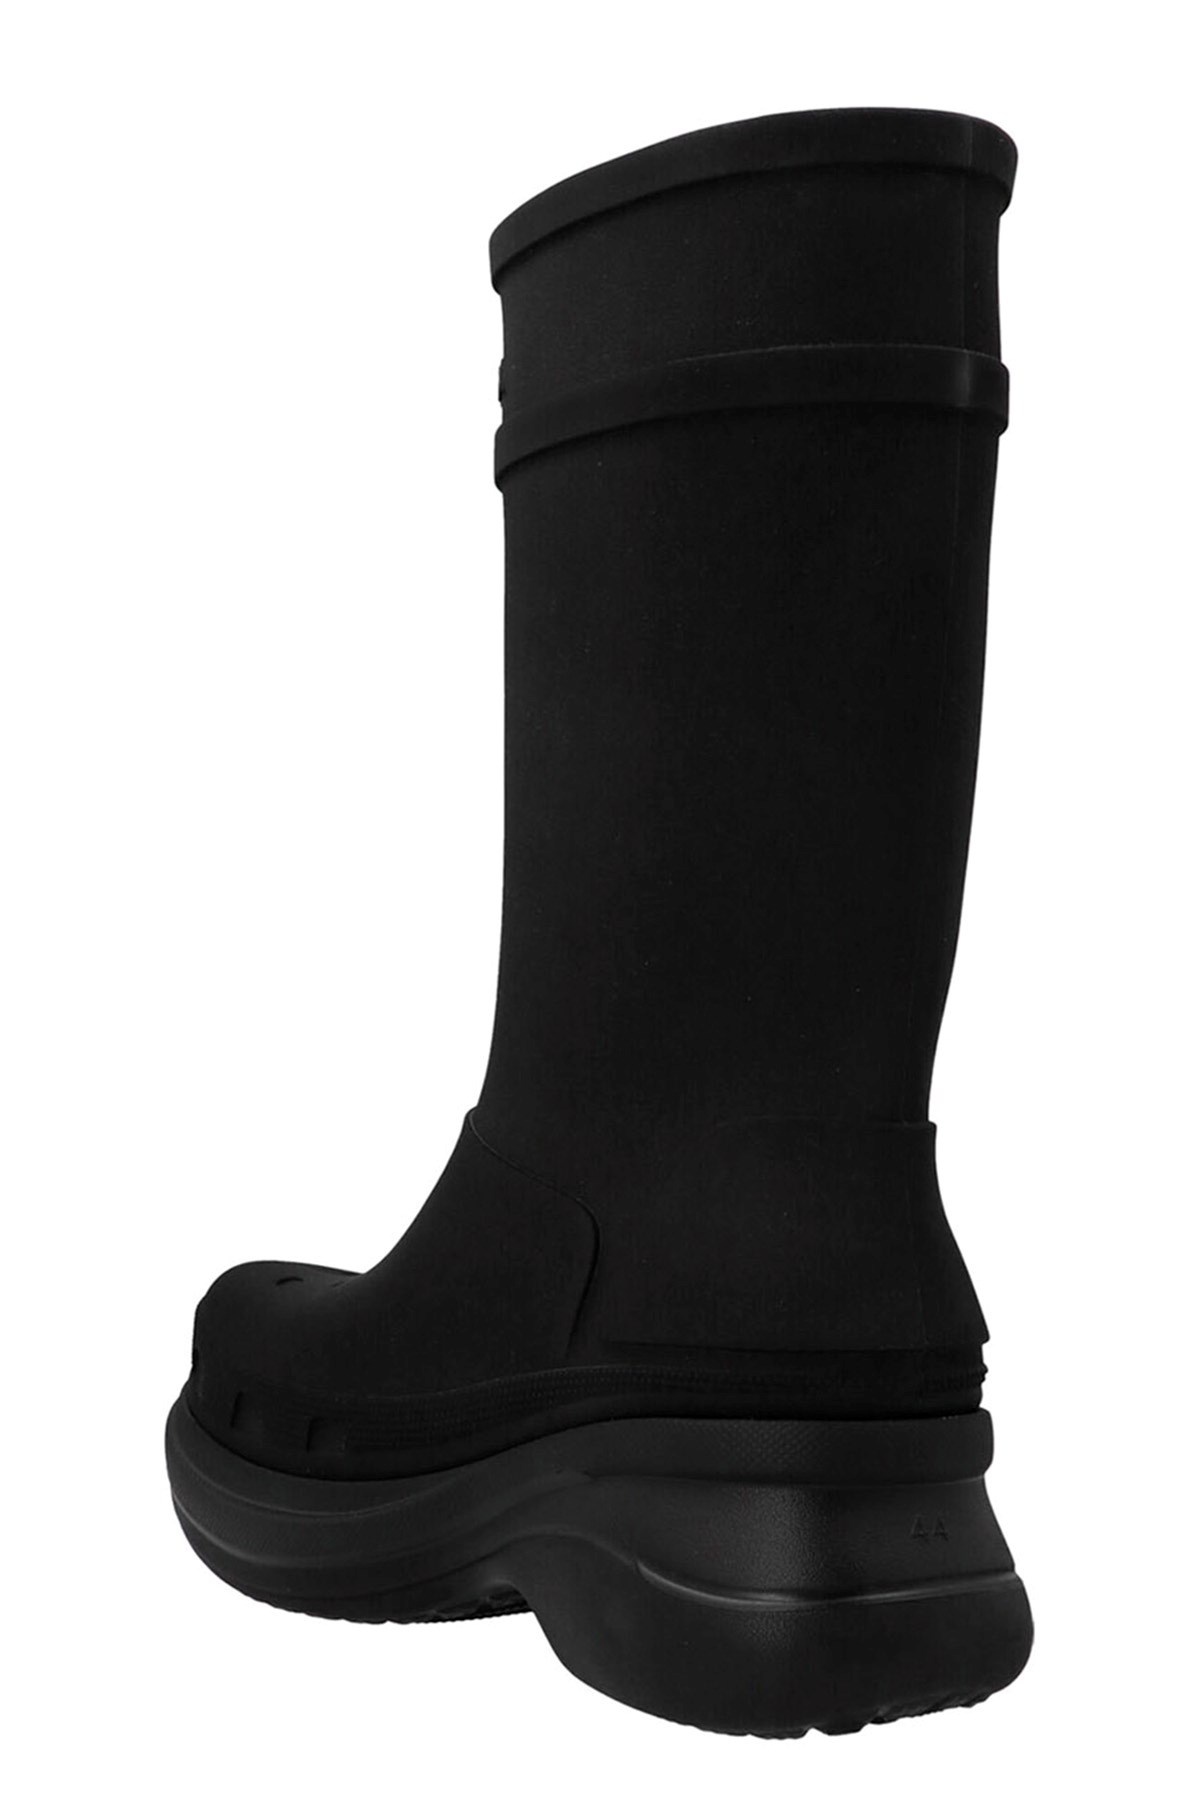 Balenciaga x Crocs boots - 3